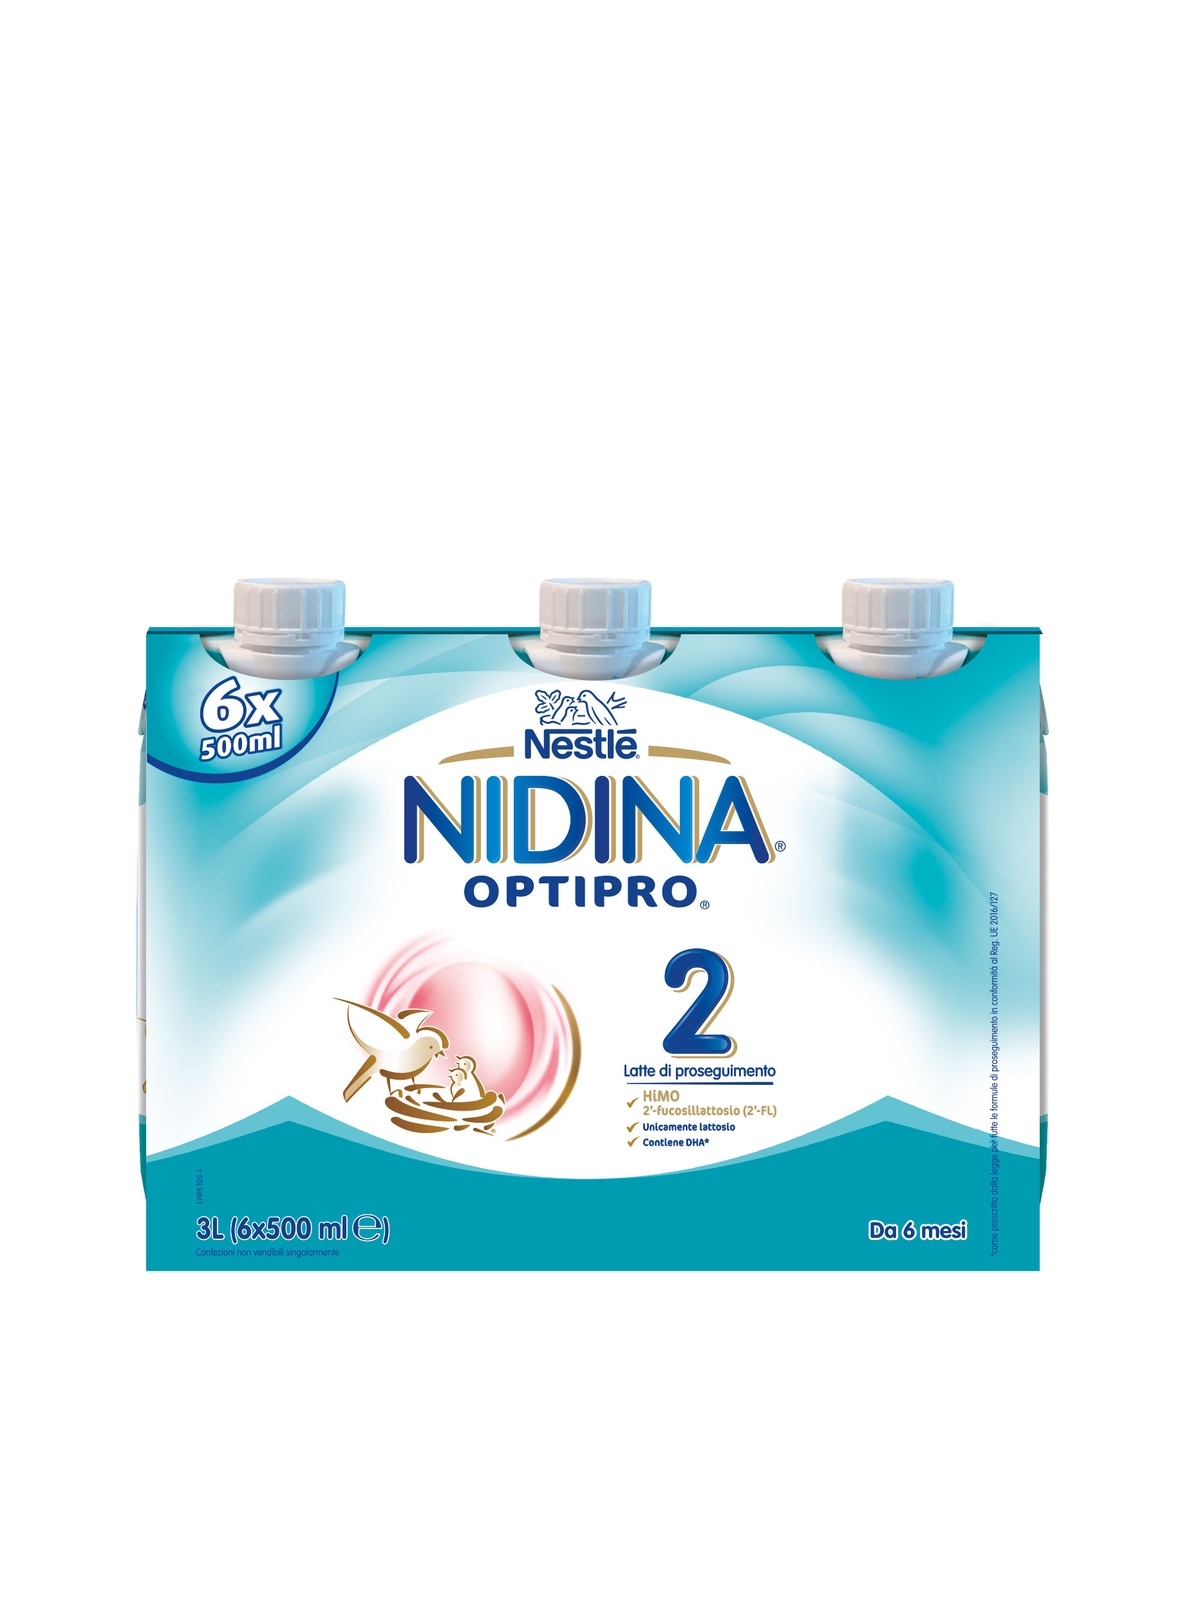 Nestlè Nidina Optipro 3 Latte Liquido di Proseguimento 1 litro